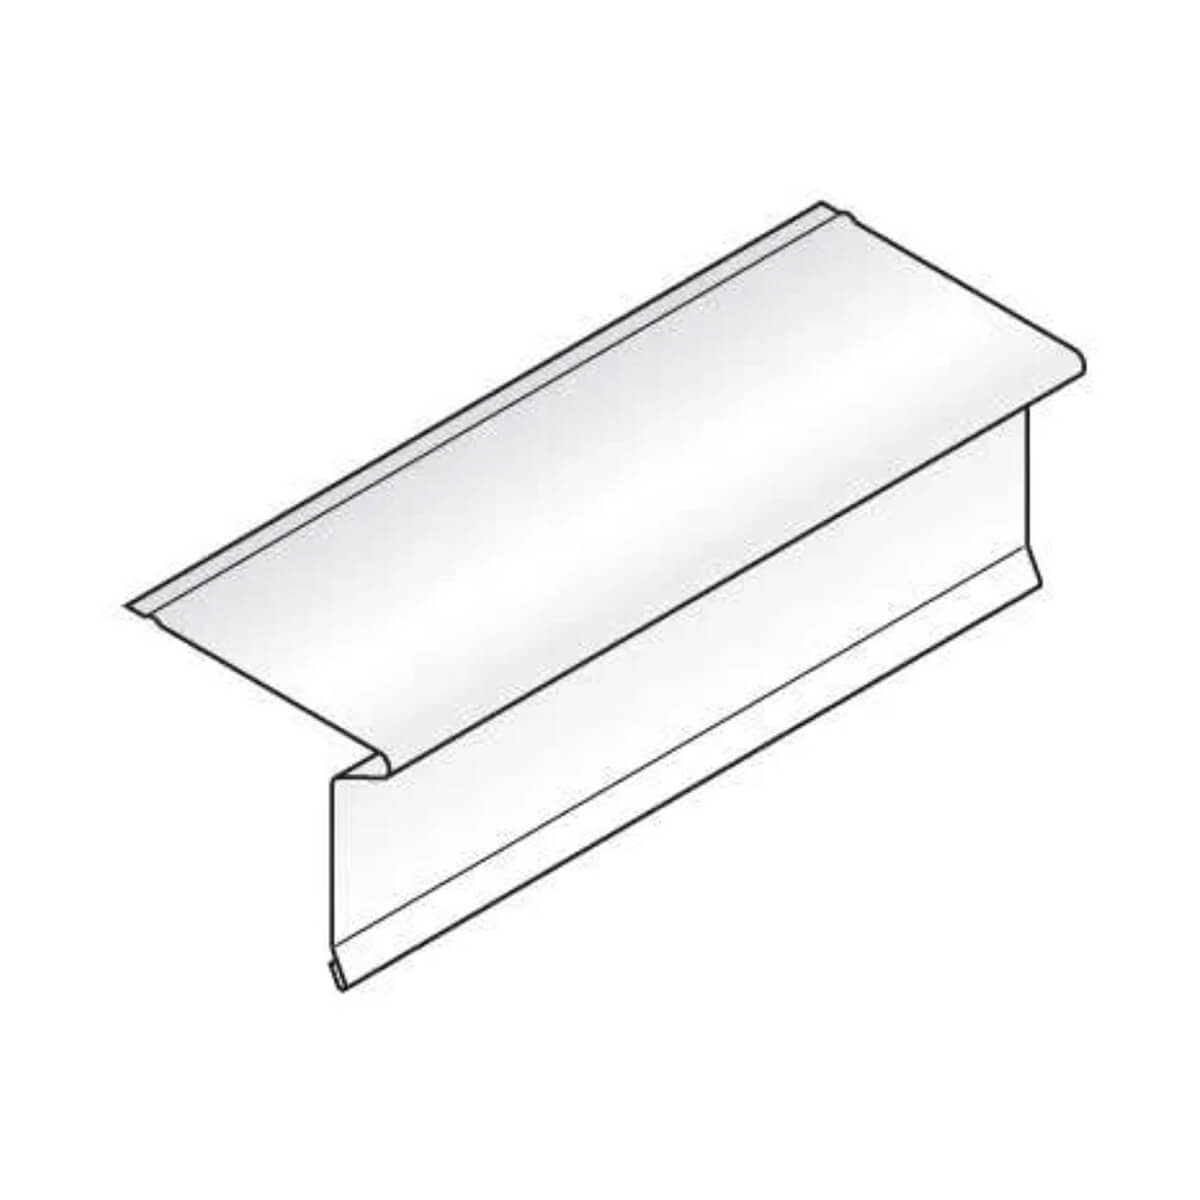 Aluminum Drip Edge - 2-in x 9-ft 10-in – White